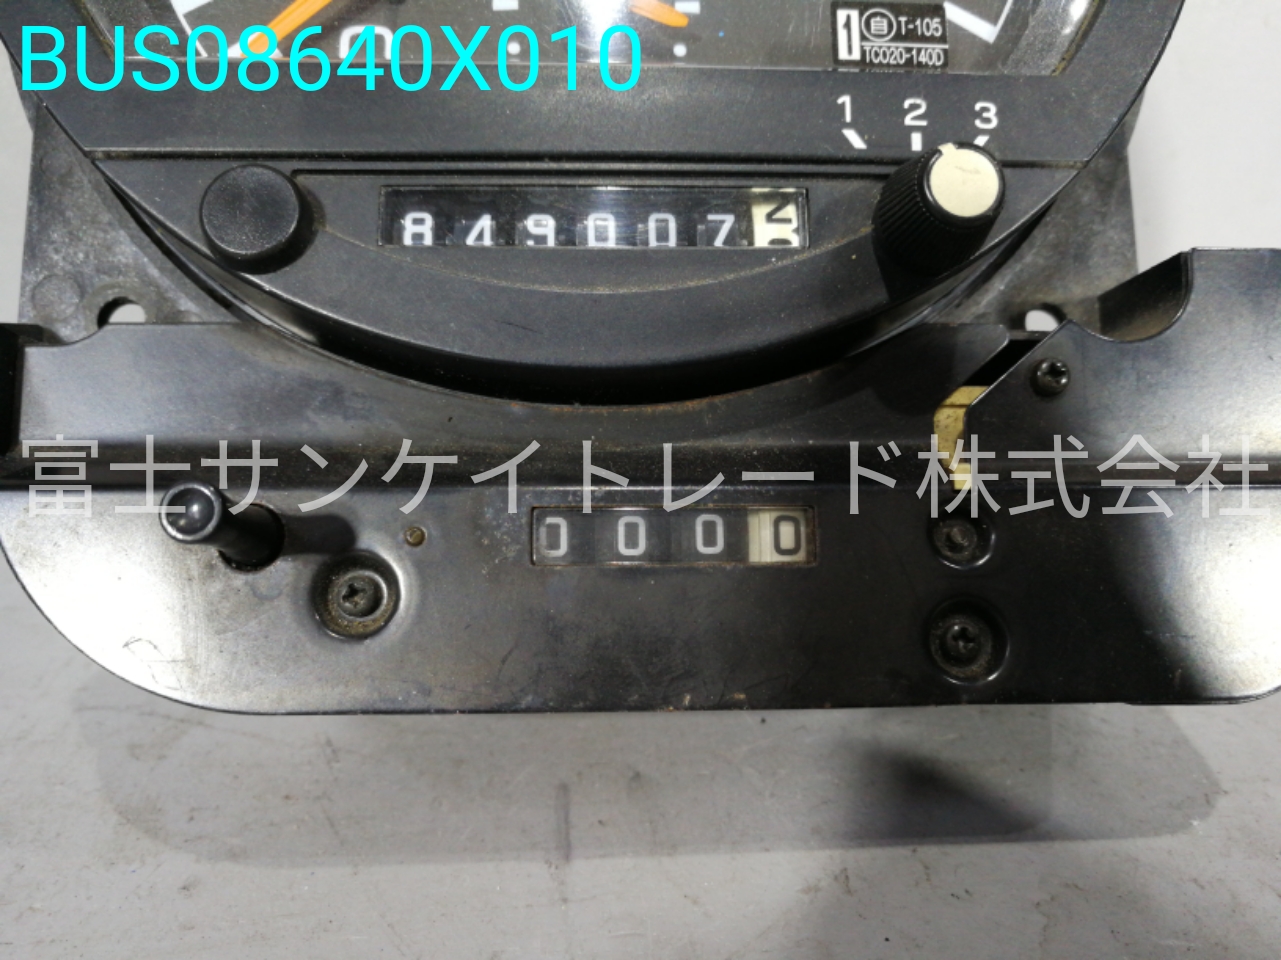 矢崎 KL-MS86MP メーター（タコグラフ） MK54280[BUS08640X010]｜中古 